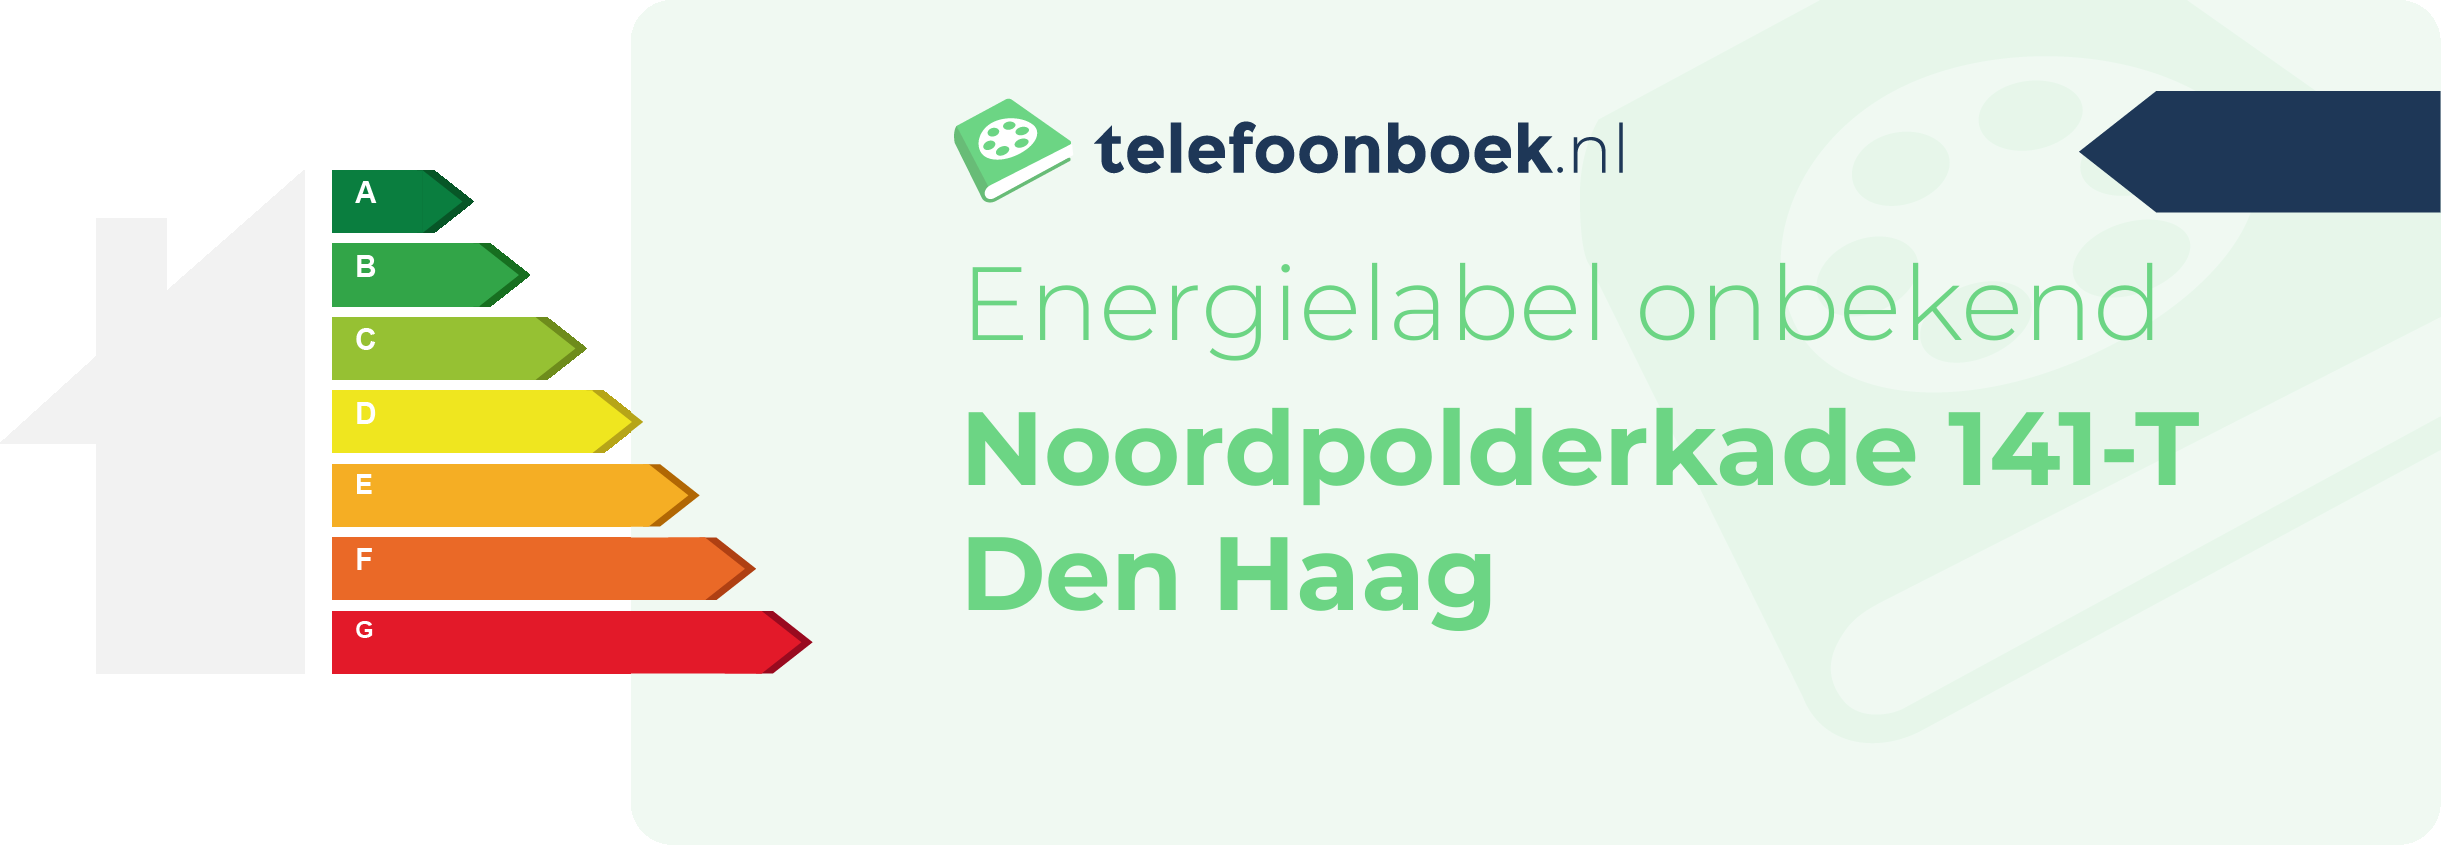 Energielabel Noordpolderkade 141-T Den Haag